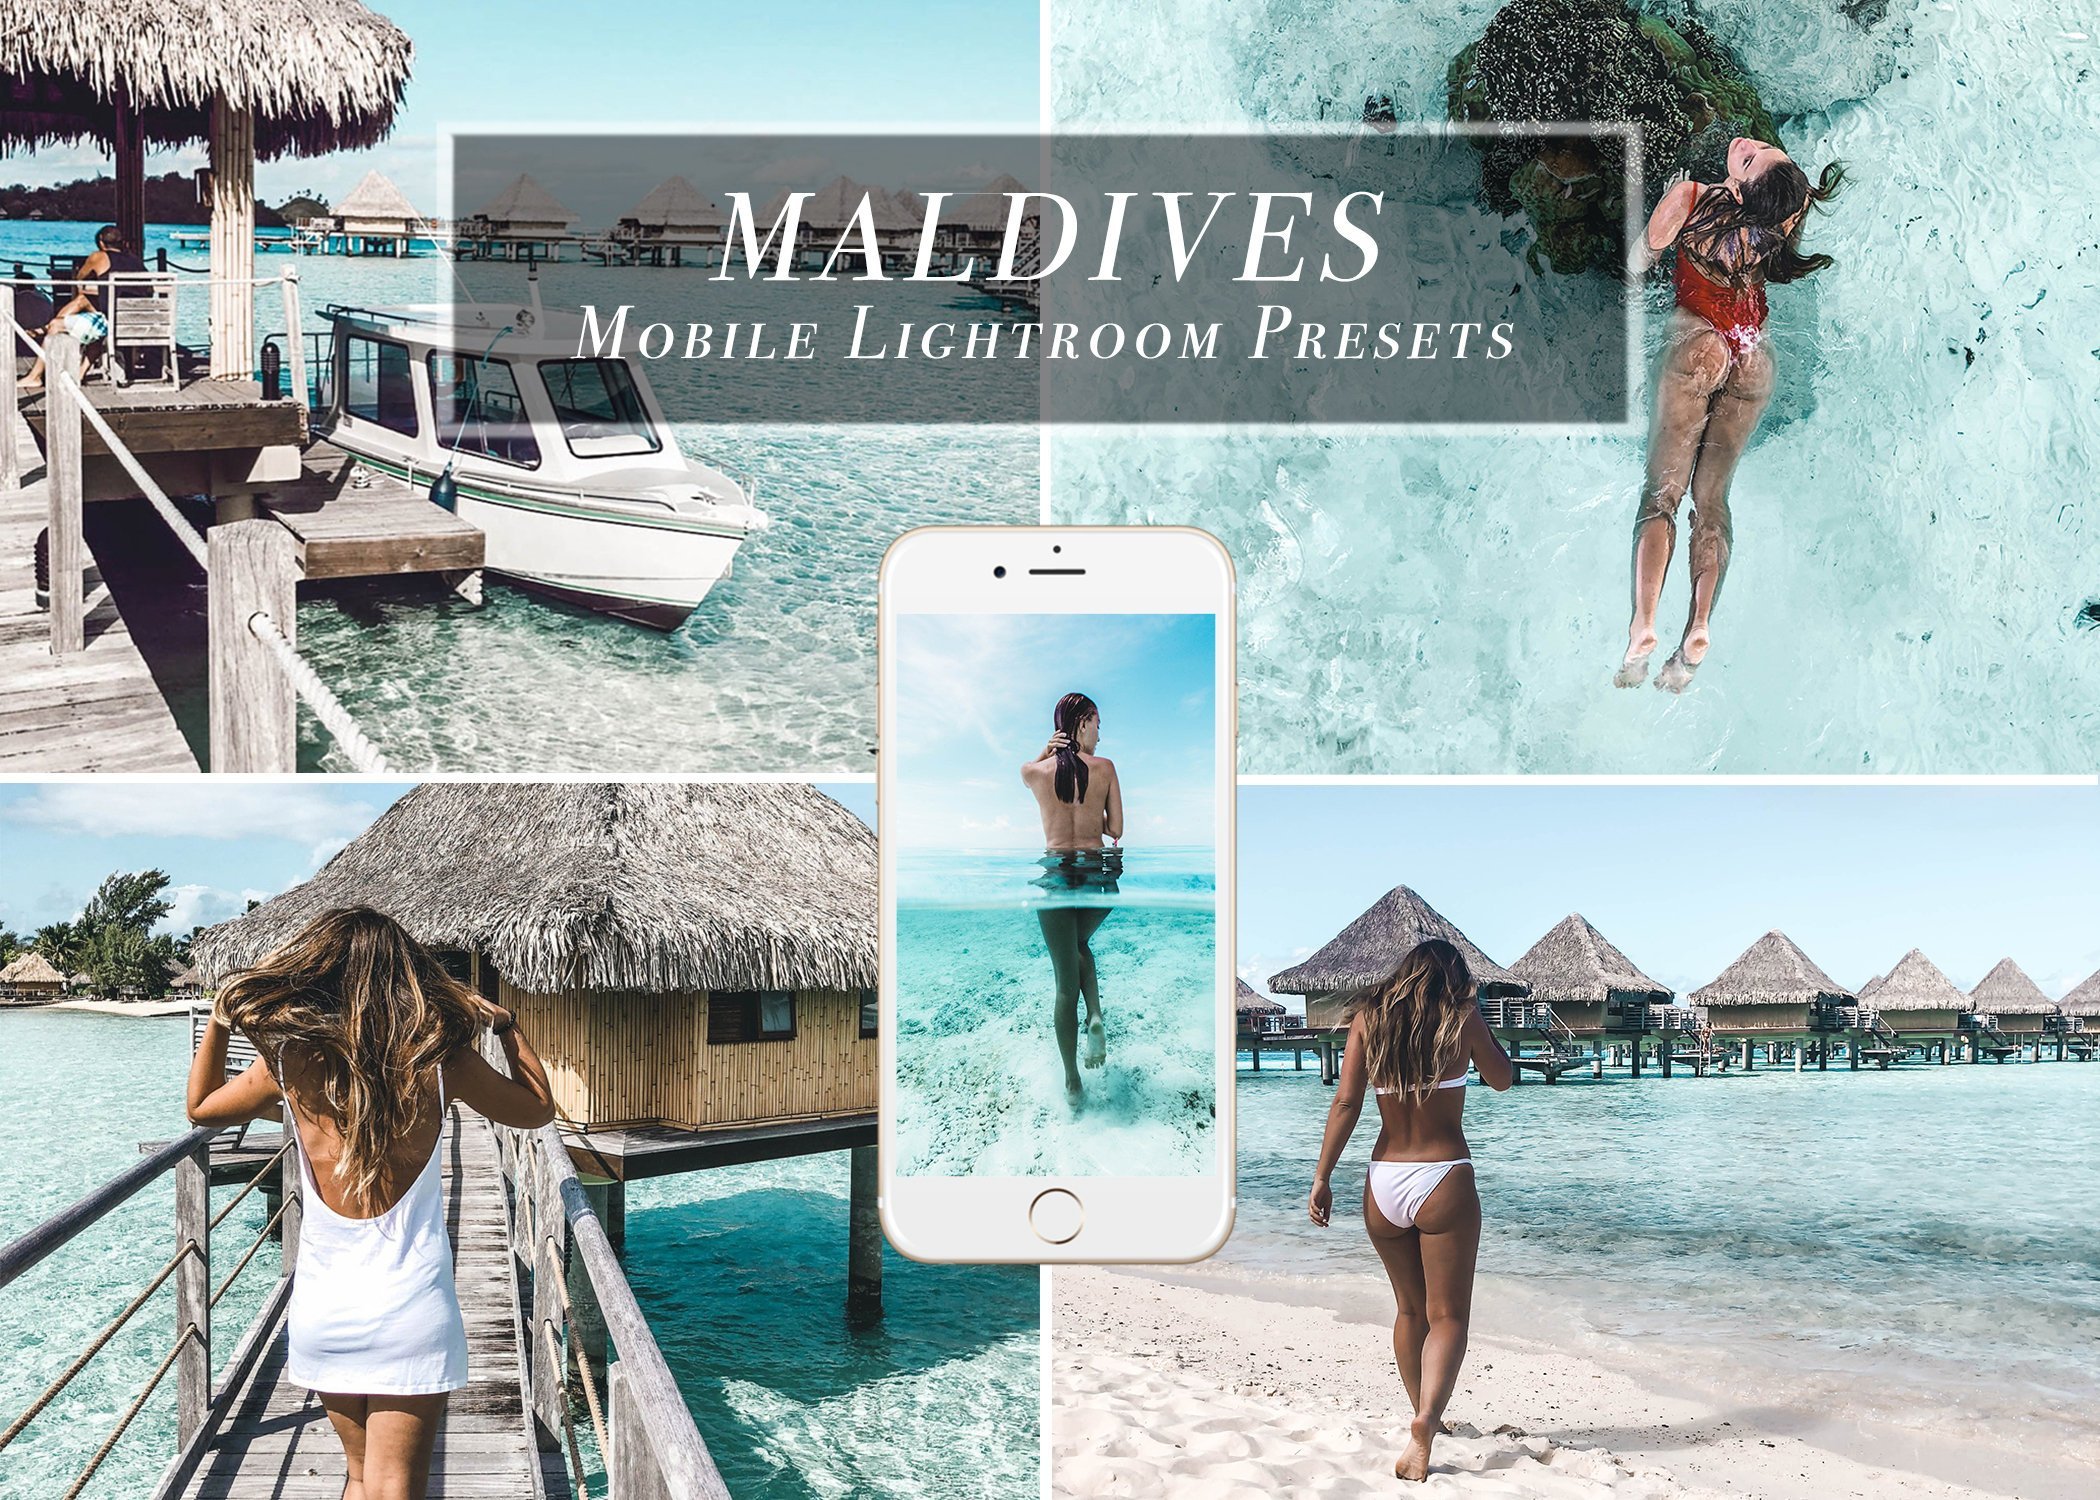 Lightroom Mobile Presets - Maldivescover image.